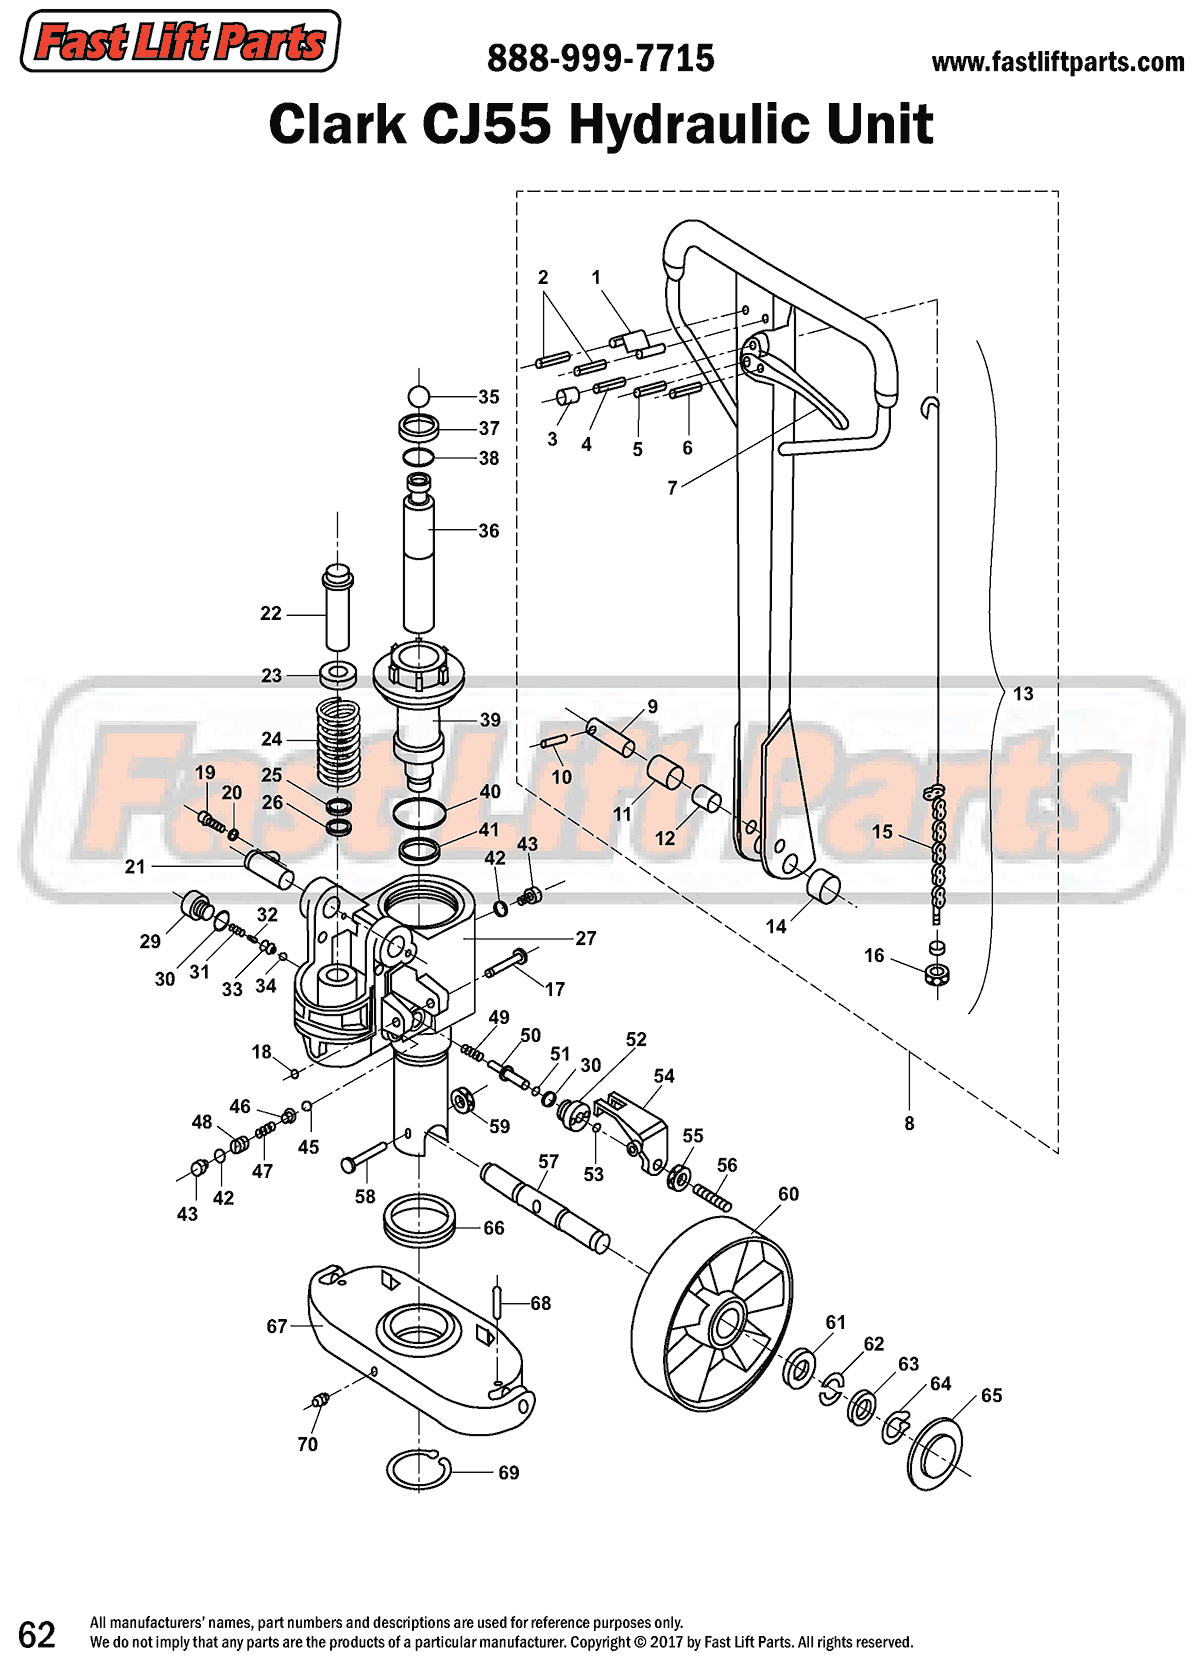 Clark CJ 55 Hydraulic Unit Line Drawing